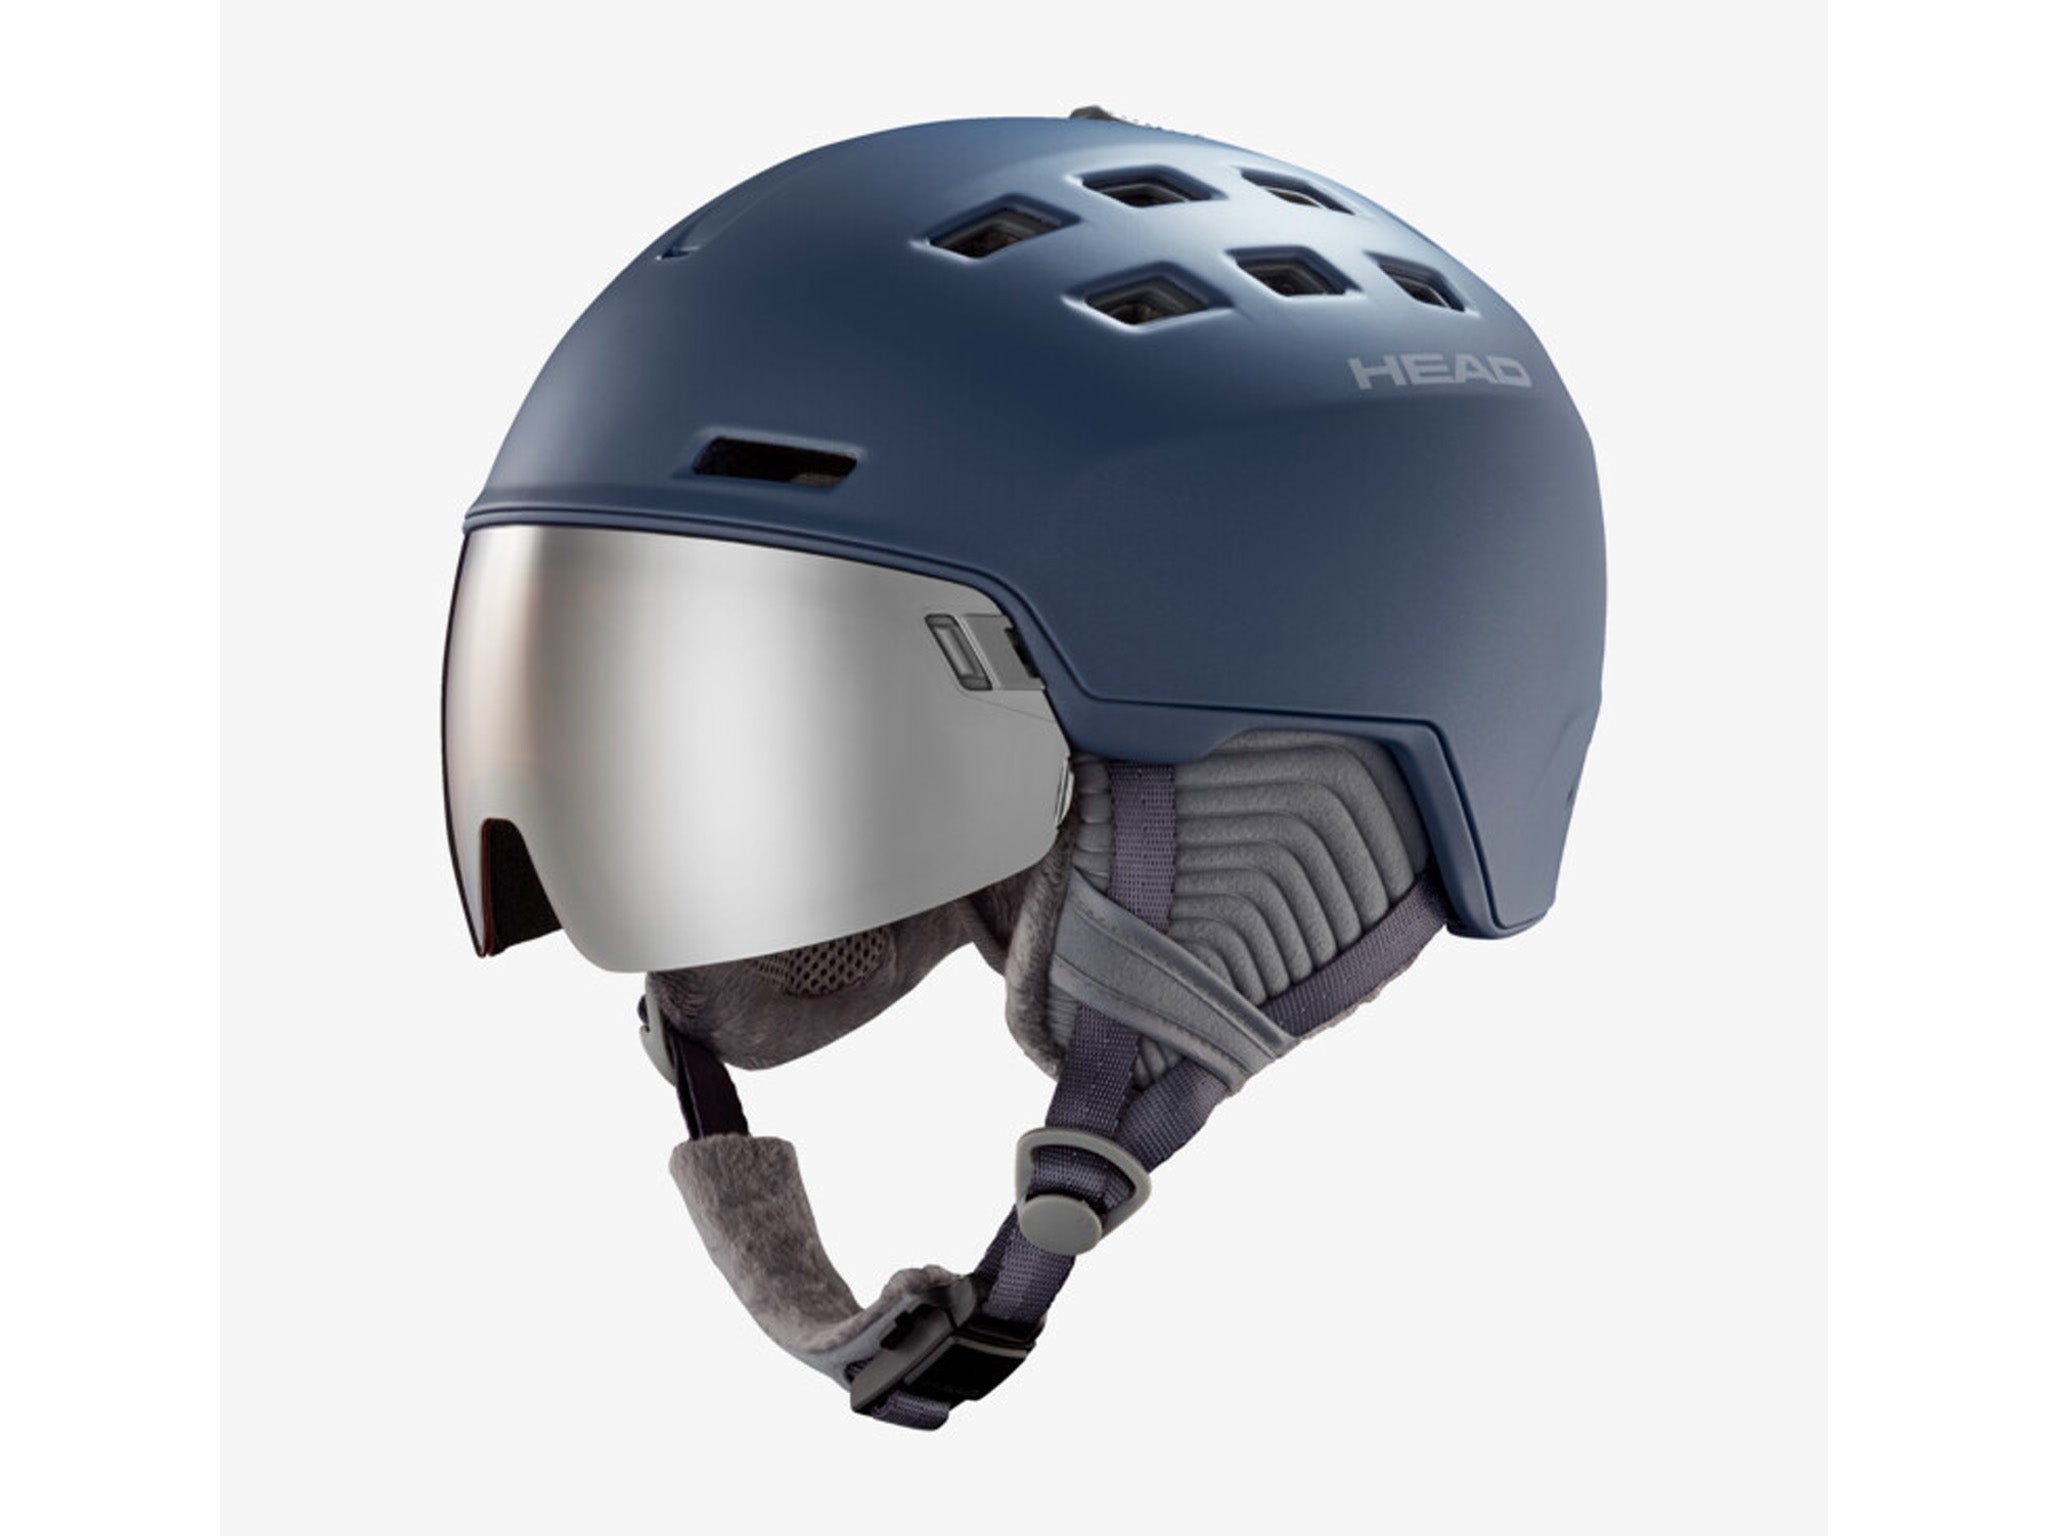 Head-rachel-helmet-Indybest-review